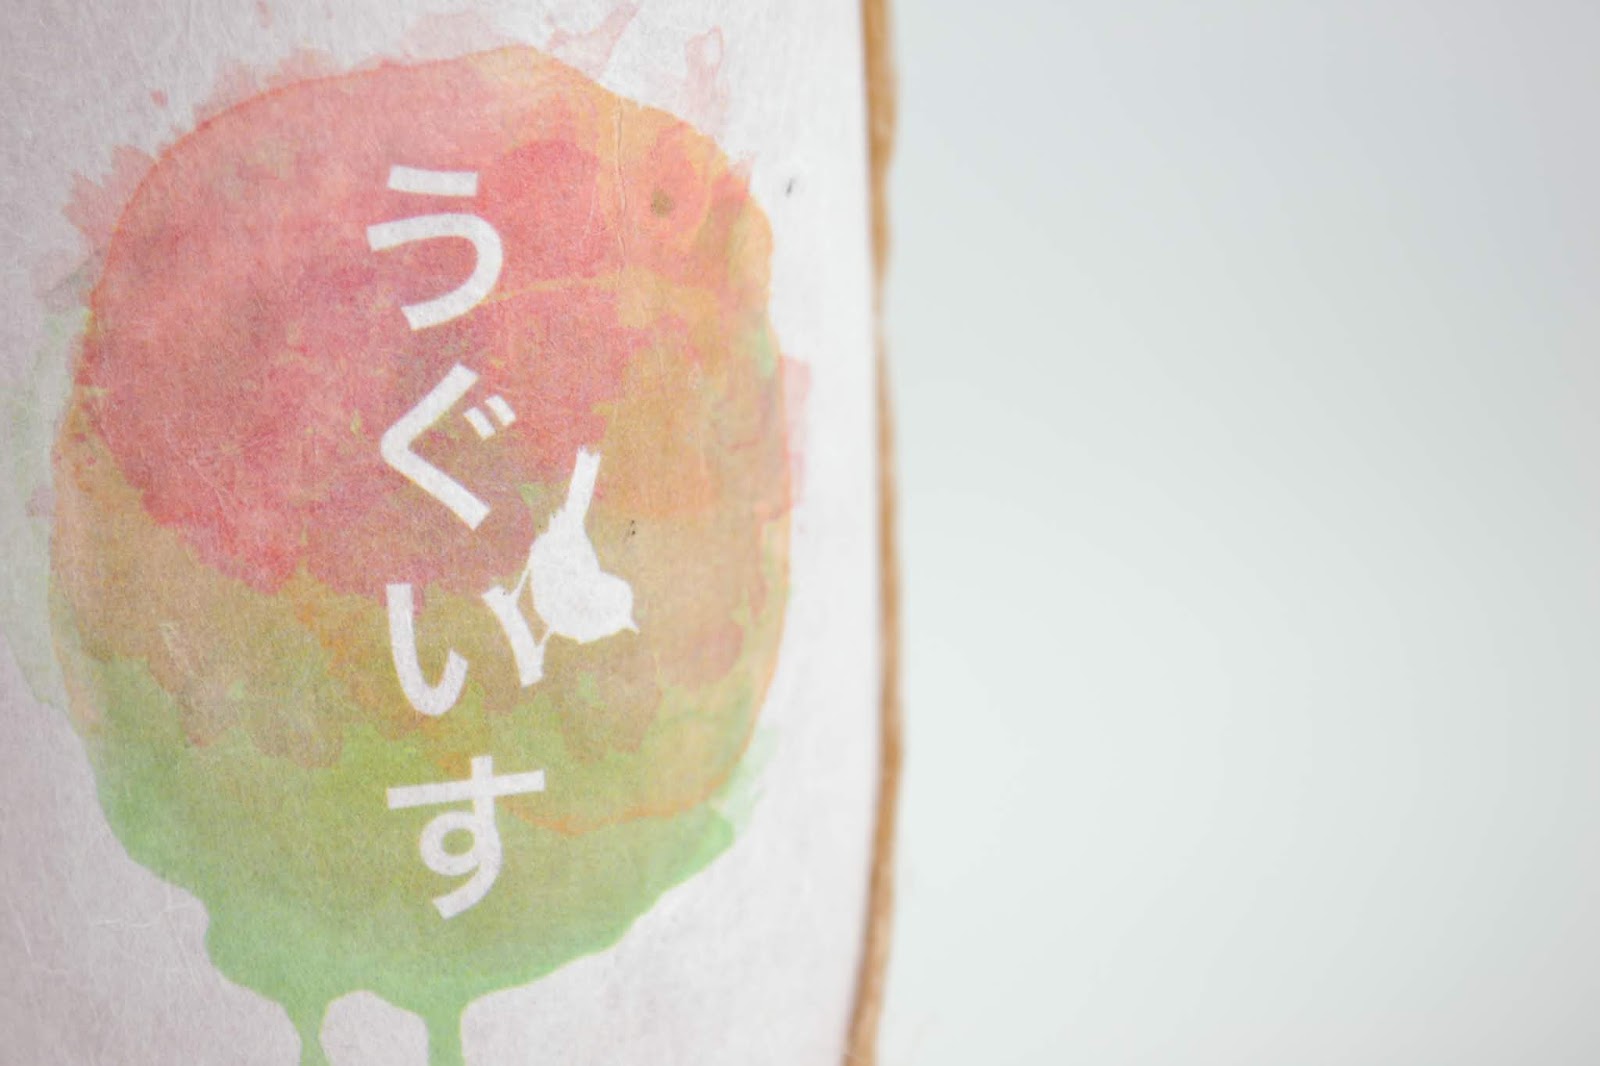 乌梅酒清酒西安四喜品牌策划包装设计VI设计logo设计